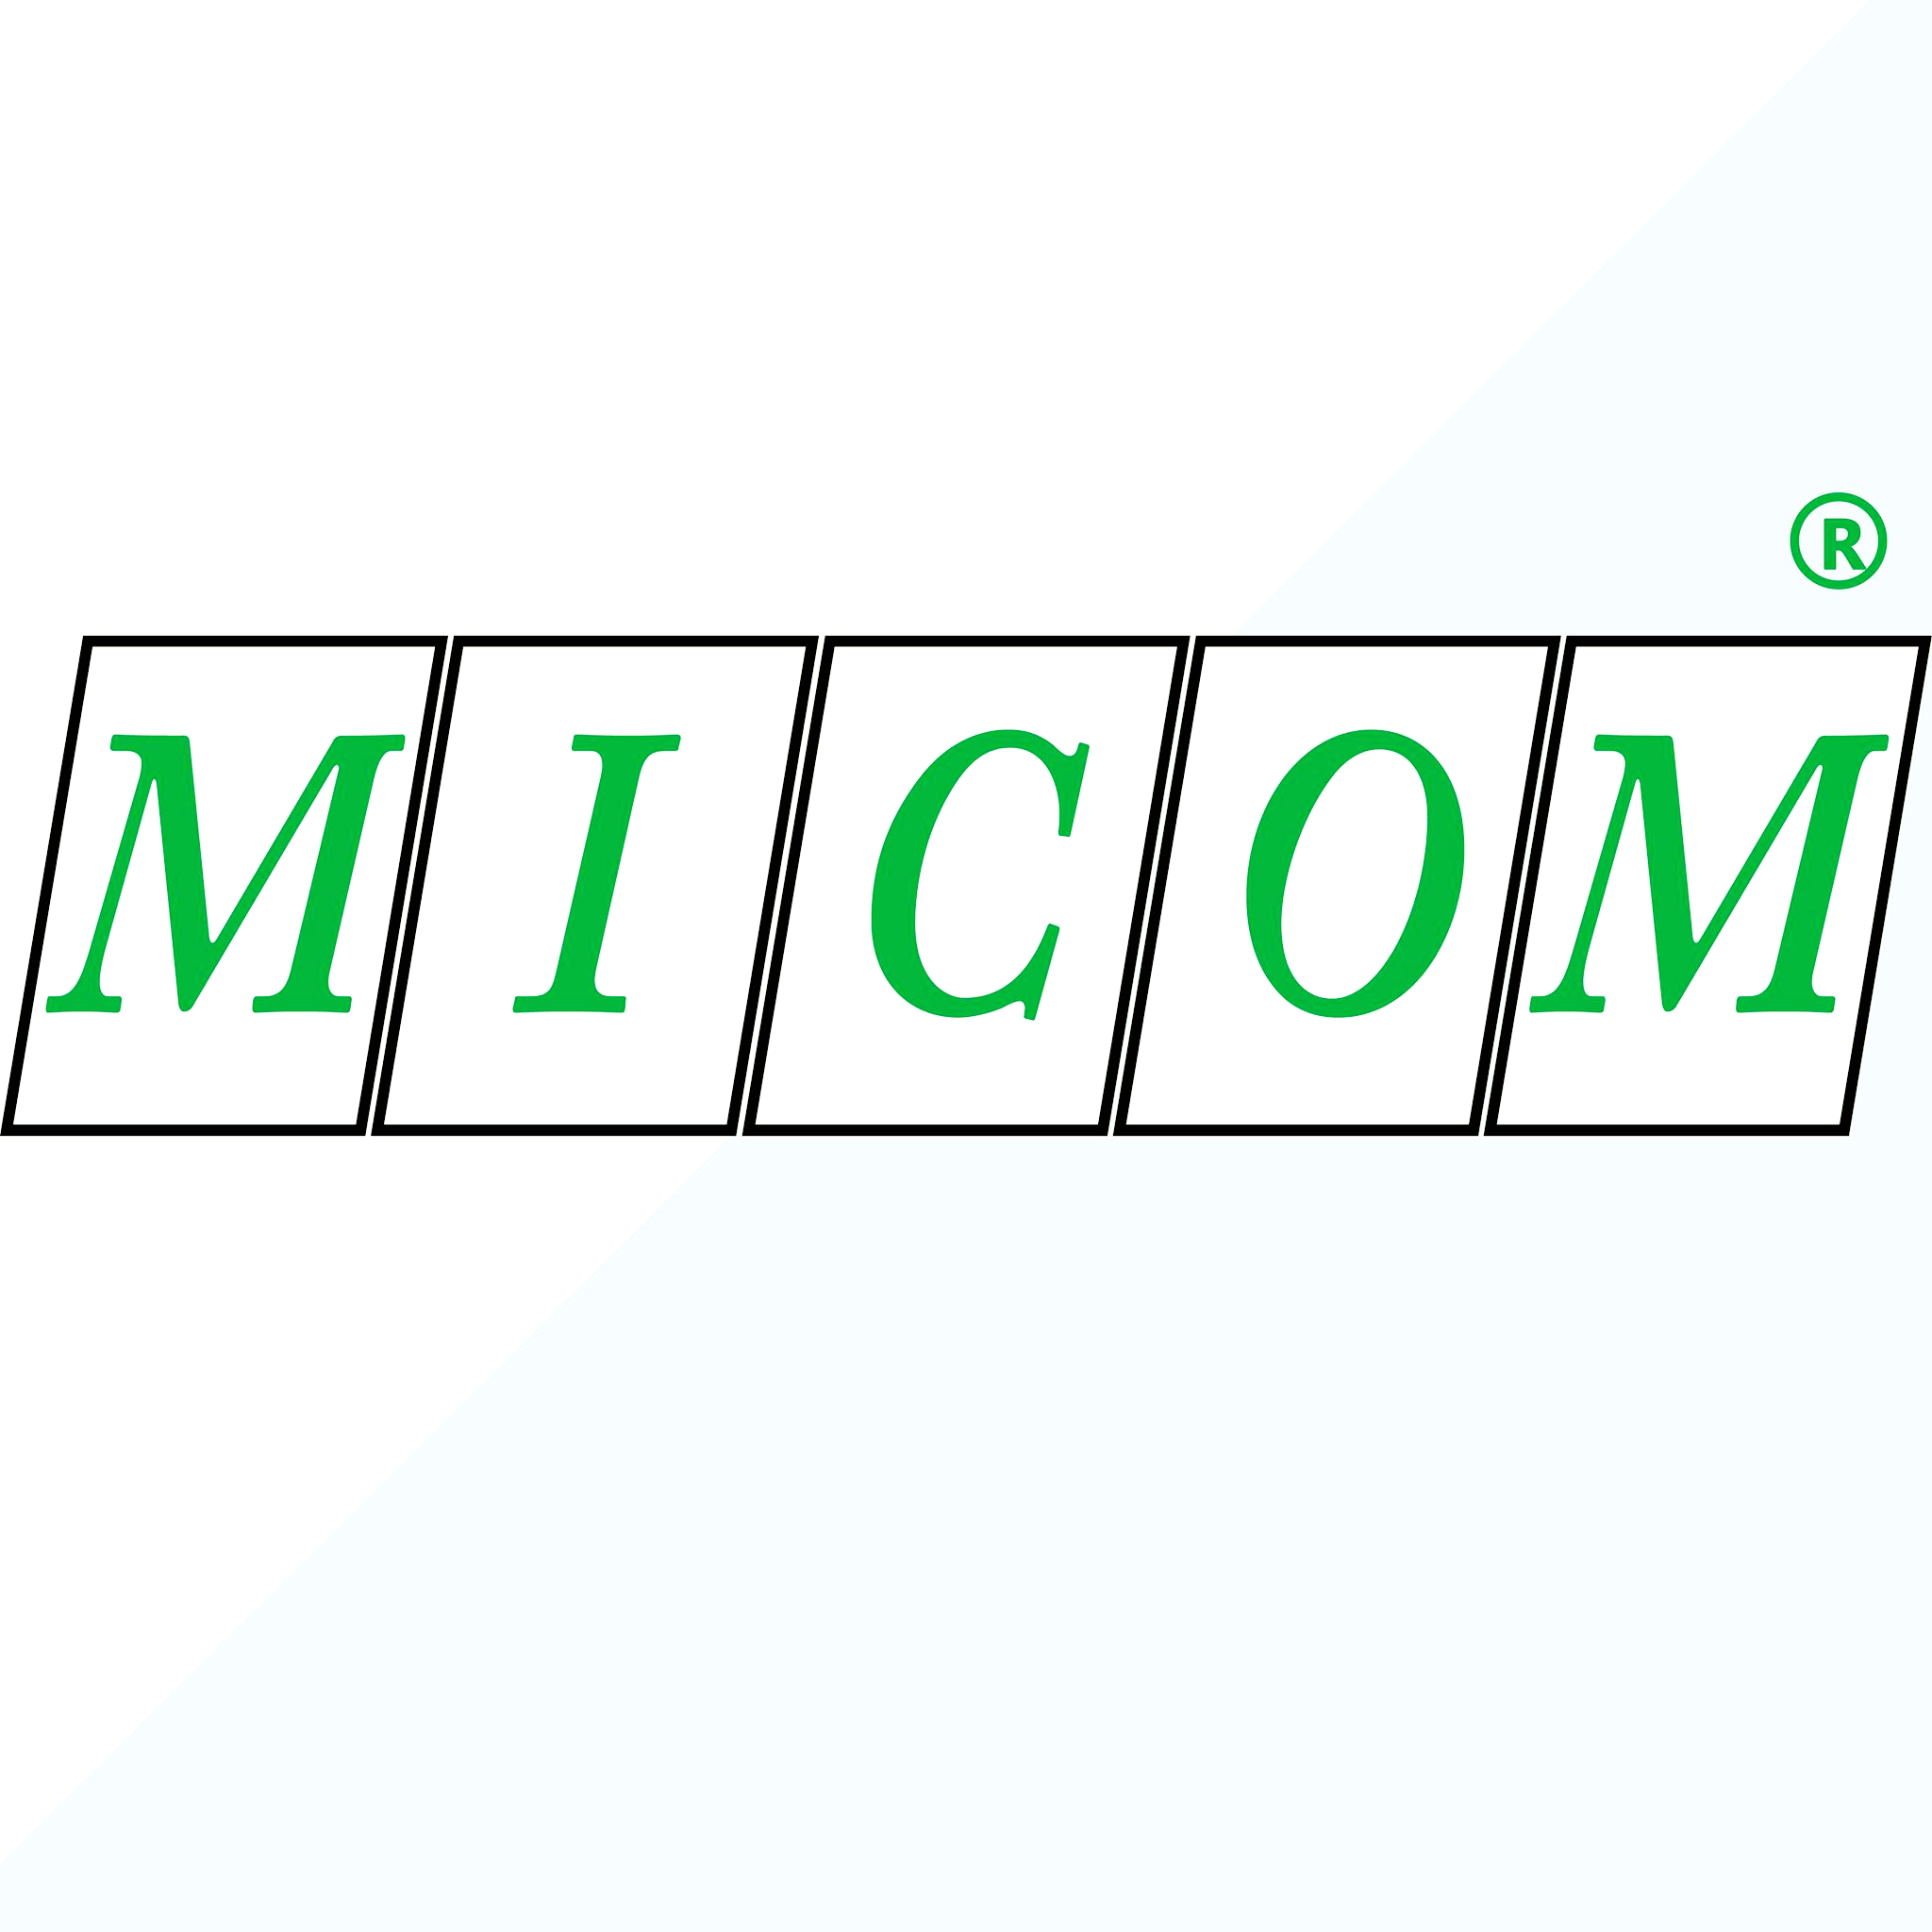 شركة صناعات ميكوم - مايند